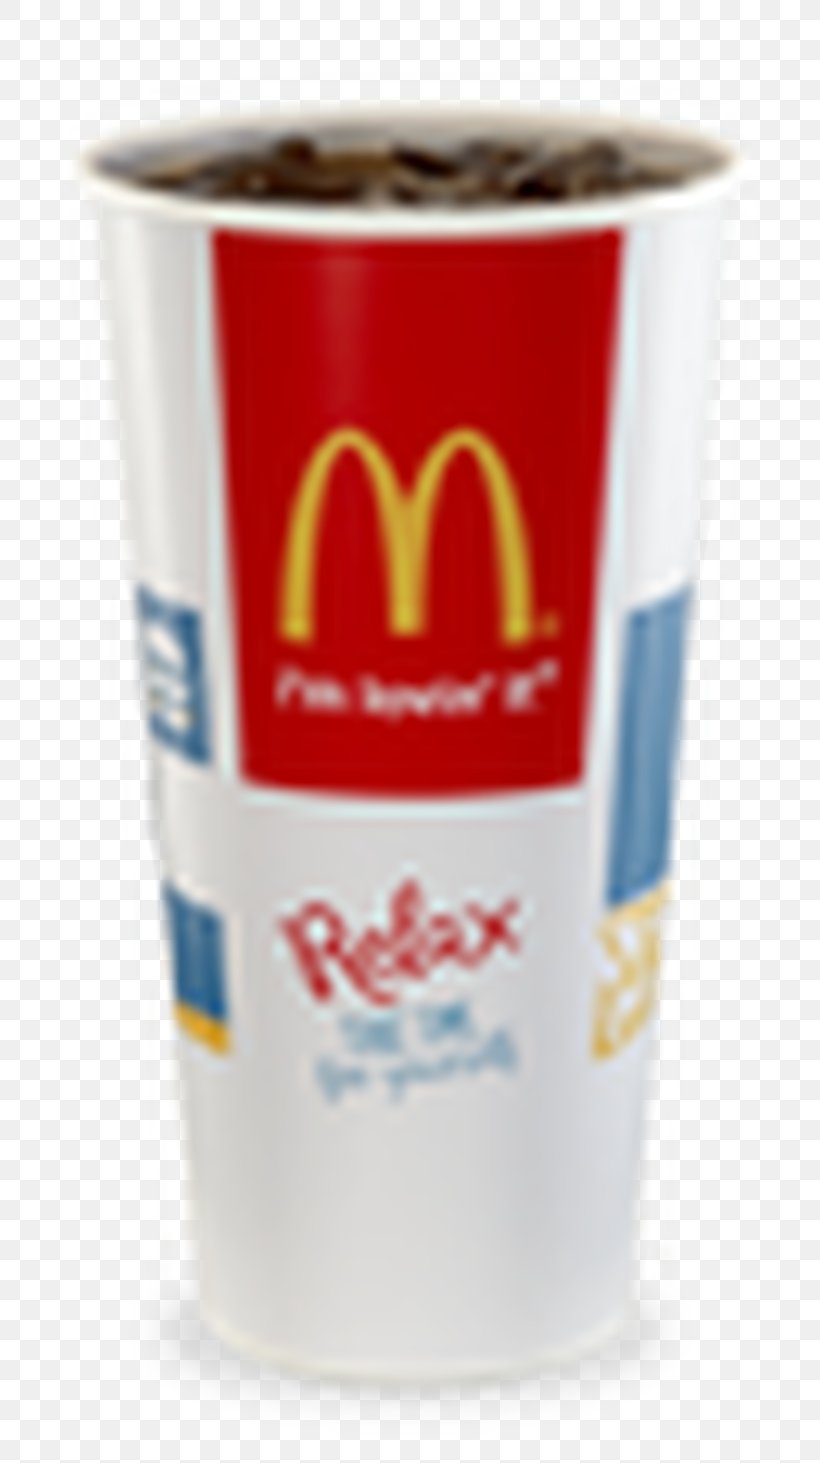 McDonald's Big Mac McDonald's Quarter Pounder Fast Food McDonald's #1 Store Museum Hamburger, PNG, 700x1463px, Fast Food, Coffee Cup, Coffee Cup Sleeve, Cup, Drink Download Free